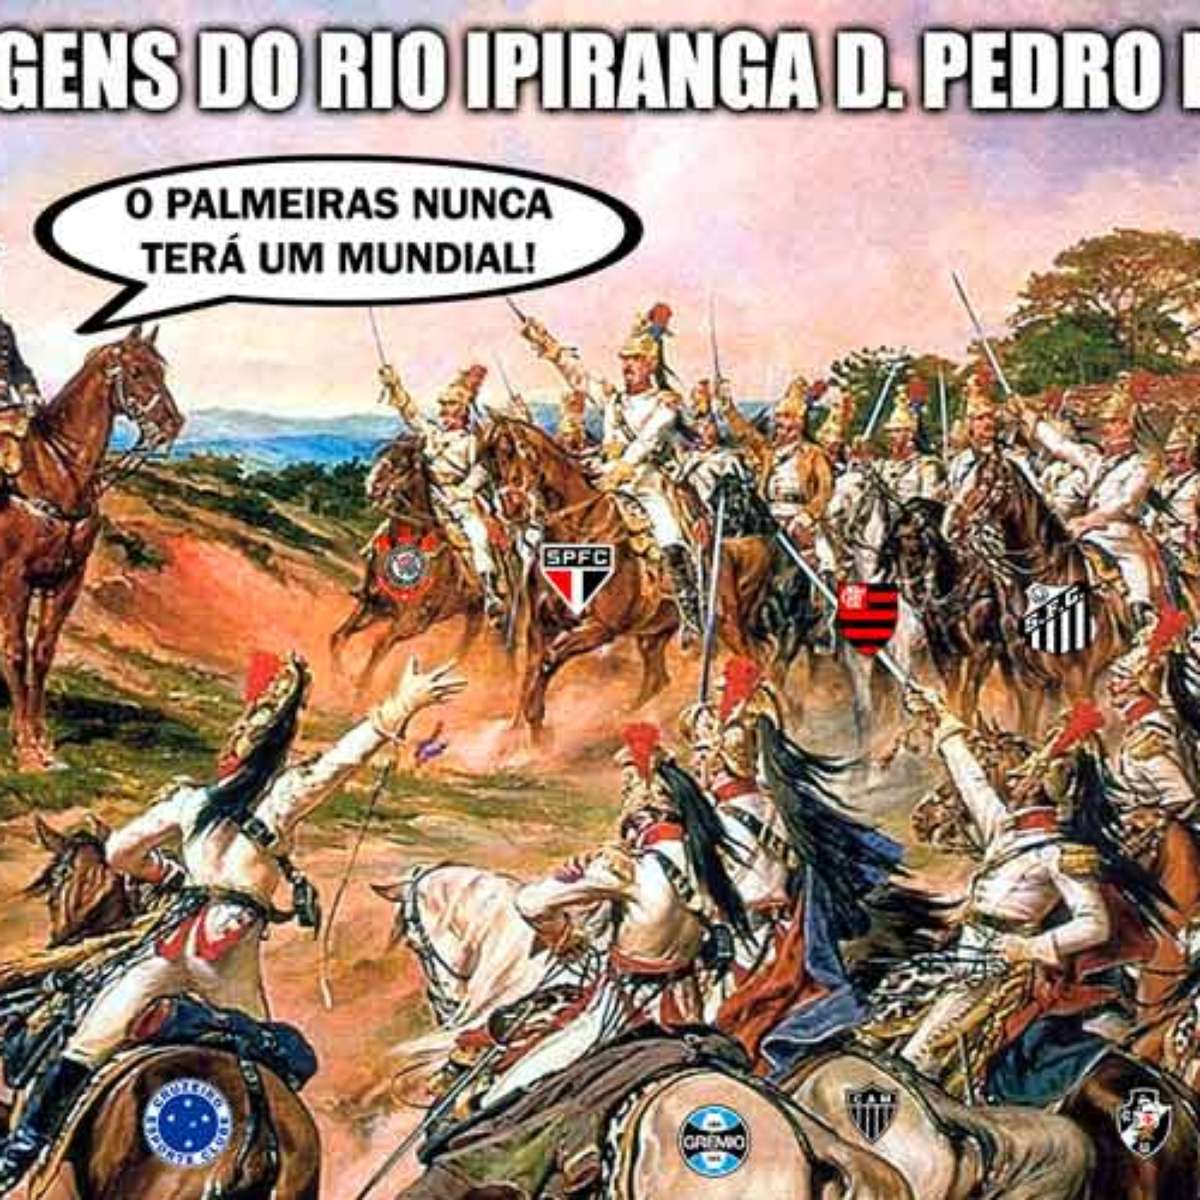 10 melhor ideia de Palmeiras Não tem mundial  palmeiras não tem mundial,  palmeiras piada, memes do palmeiras